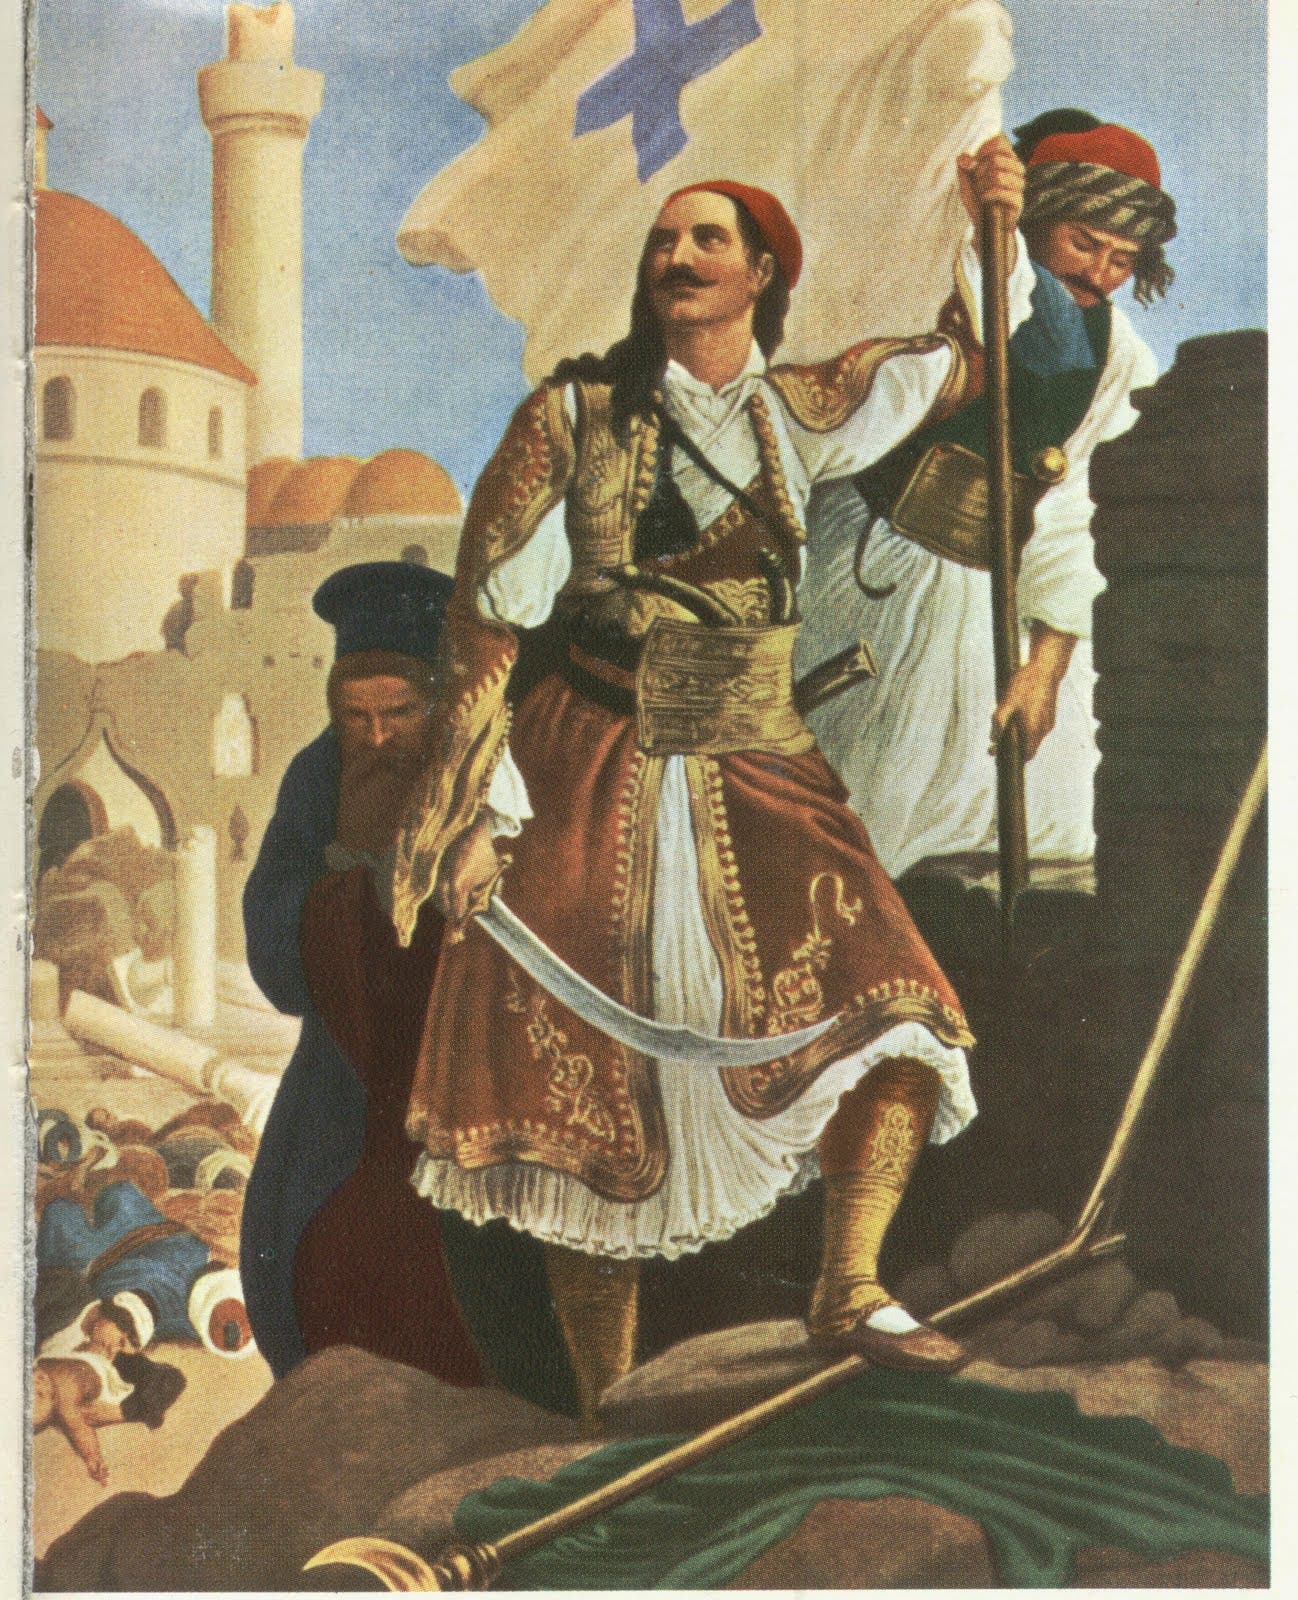 لوحة تجسد عددا من ابطال المقاومة اليونانية ضد المحتل العثماني